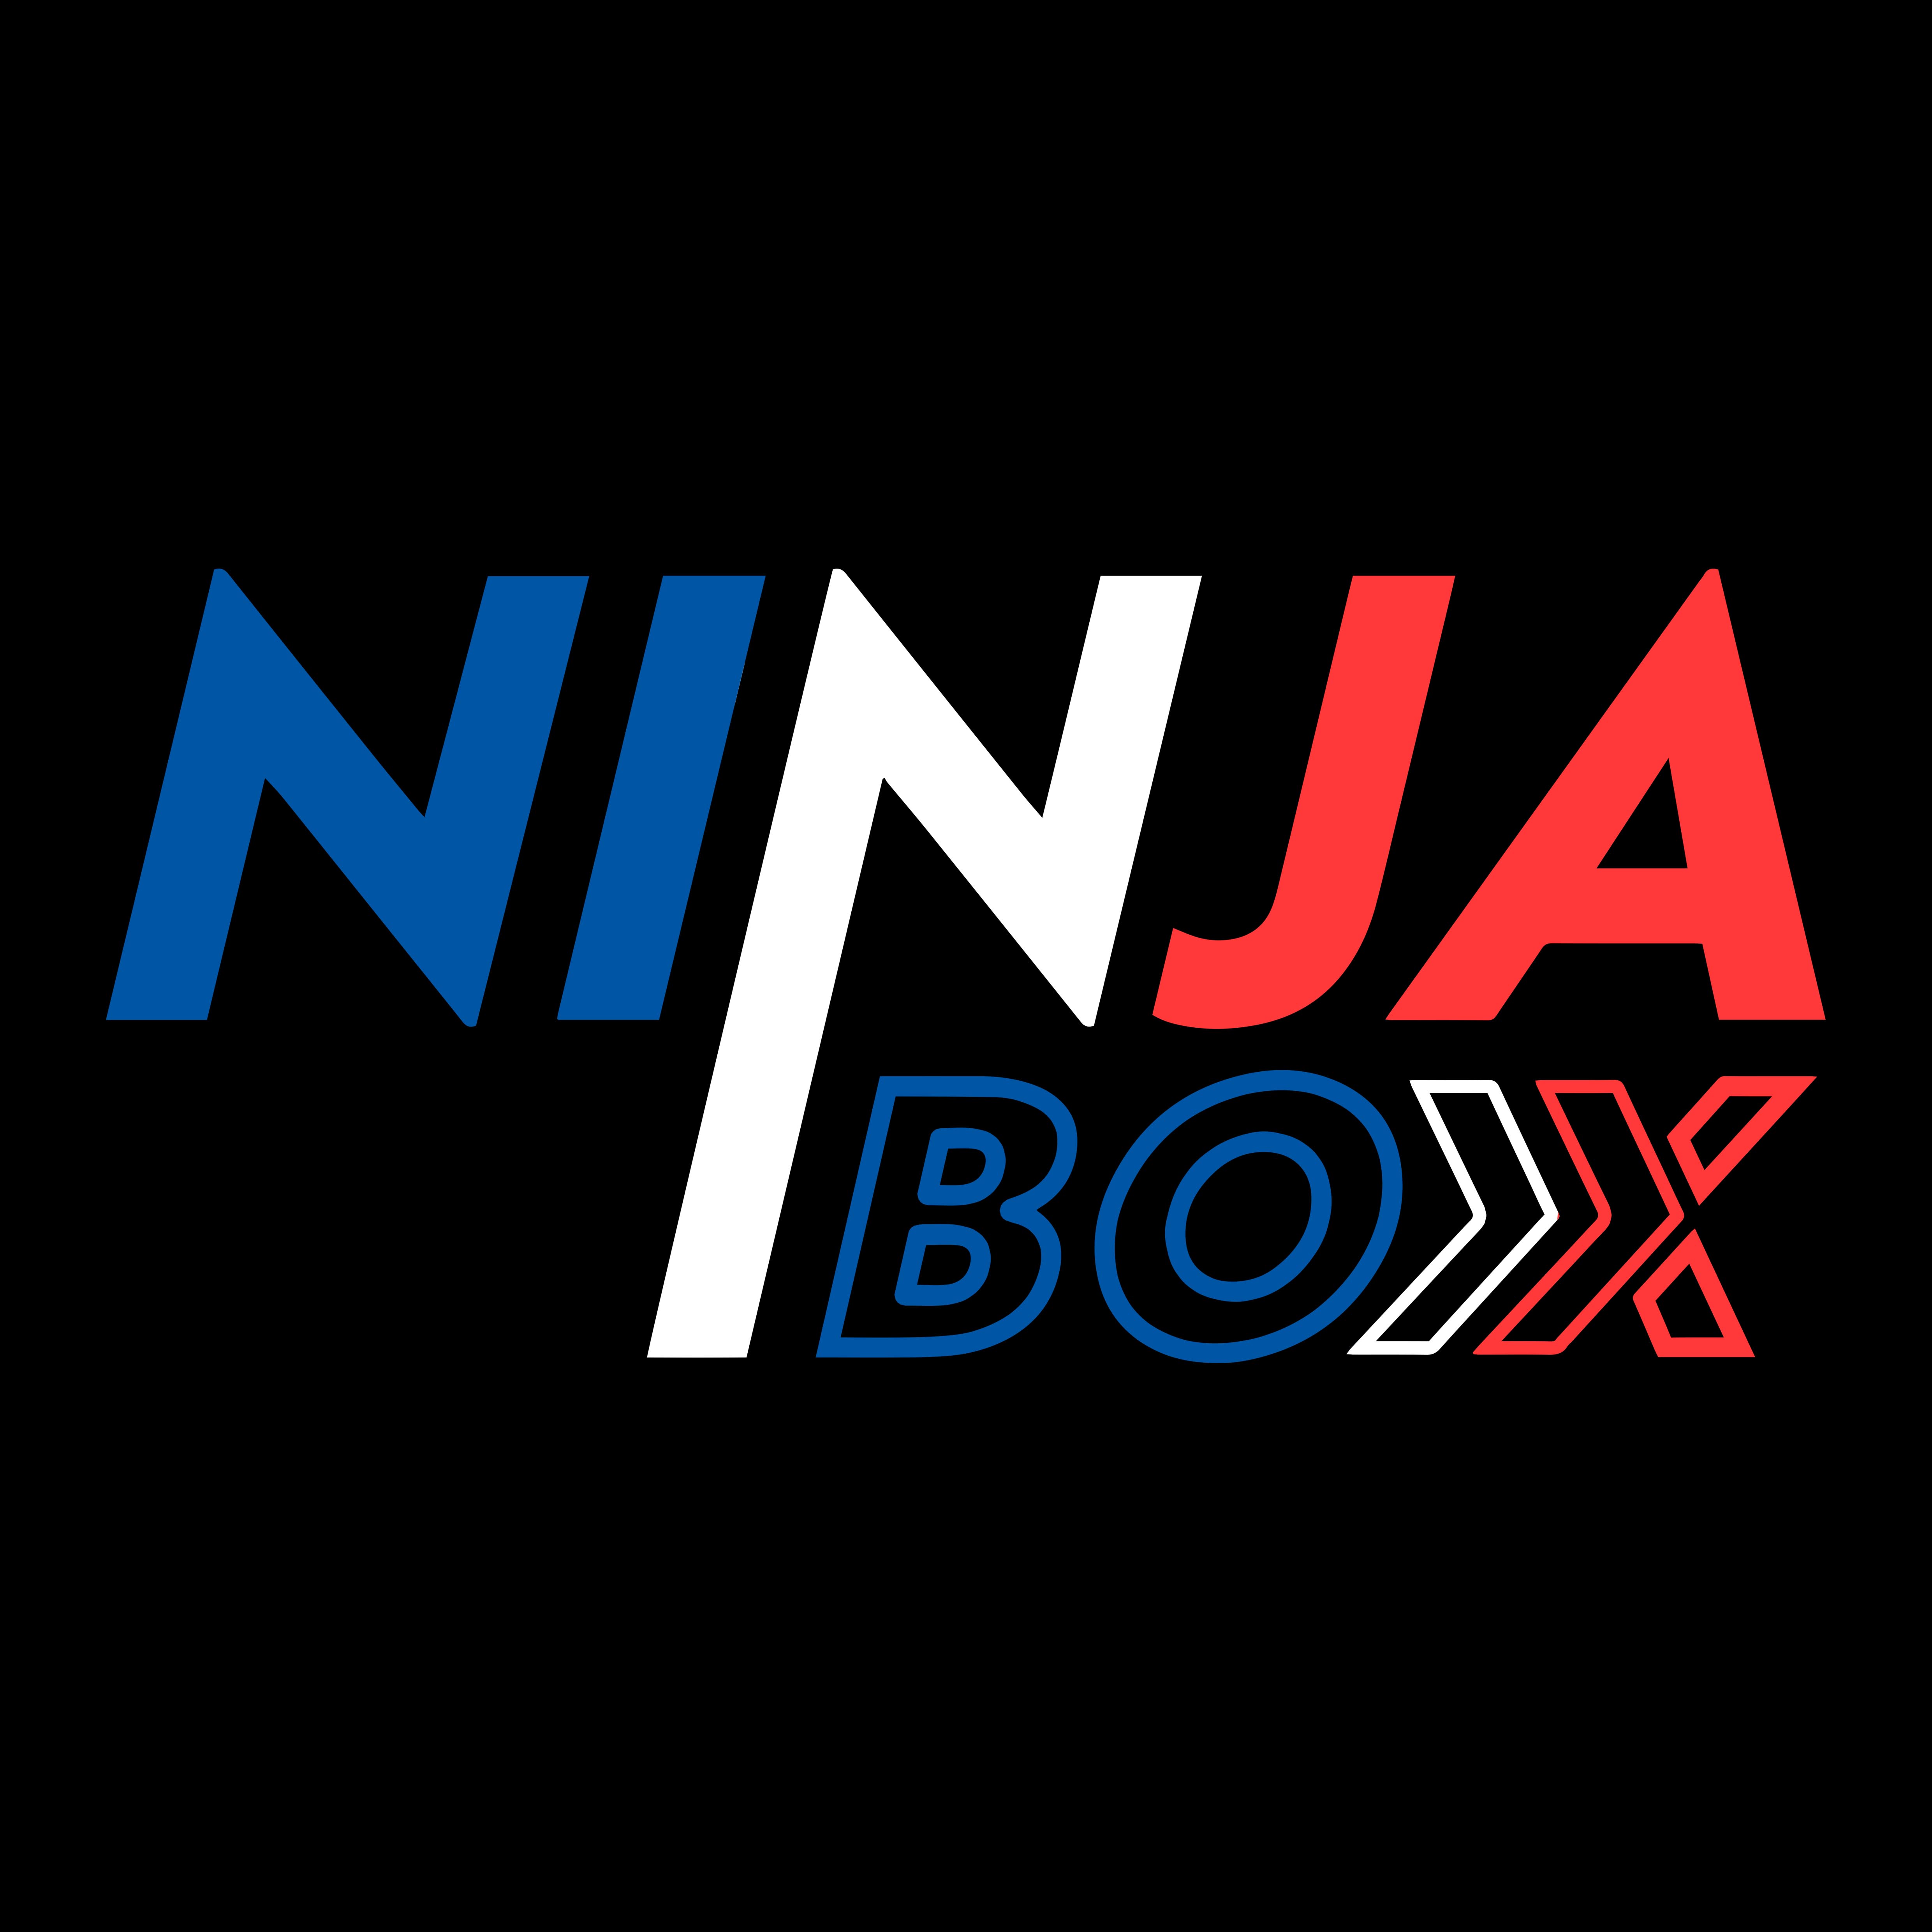 NINJA BOX